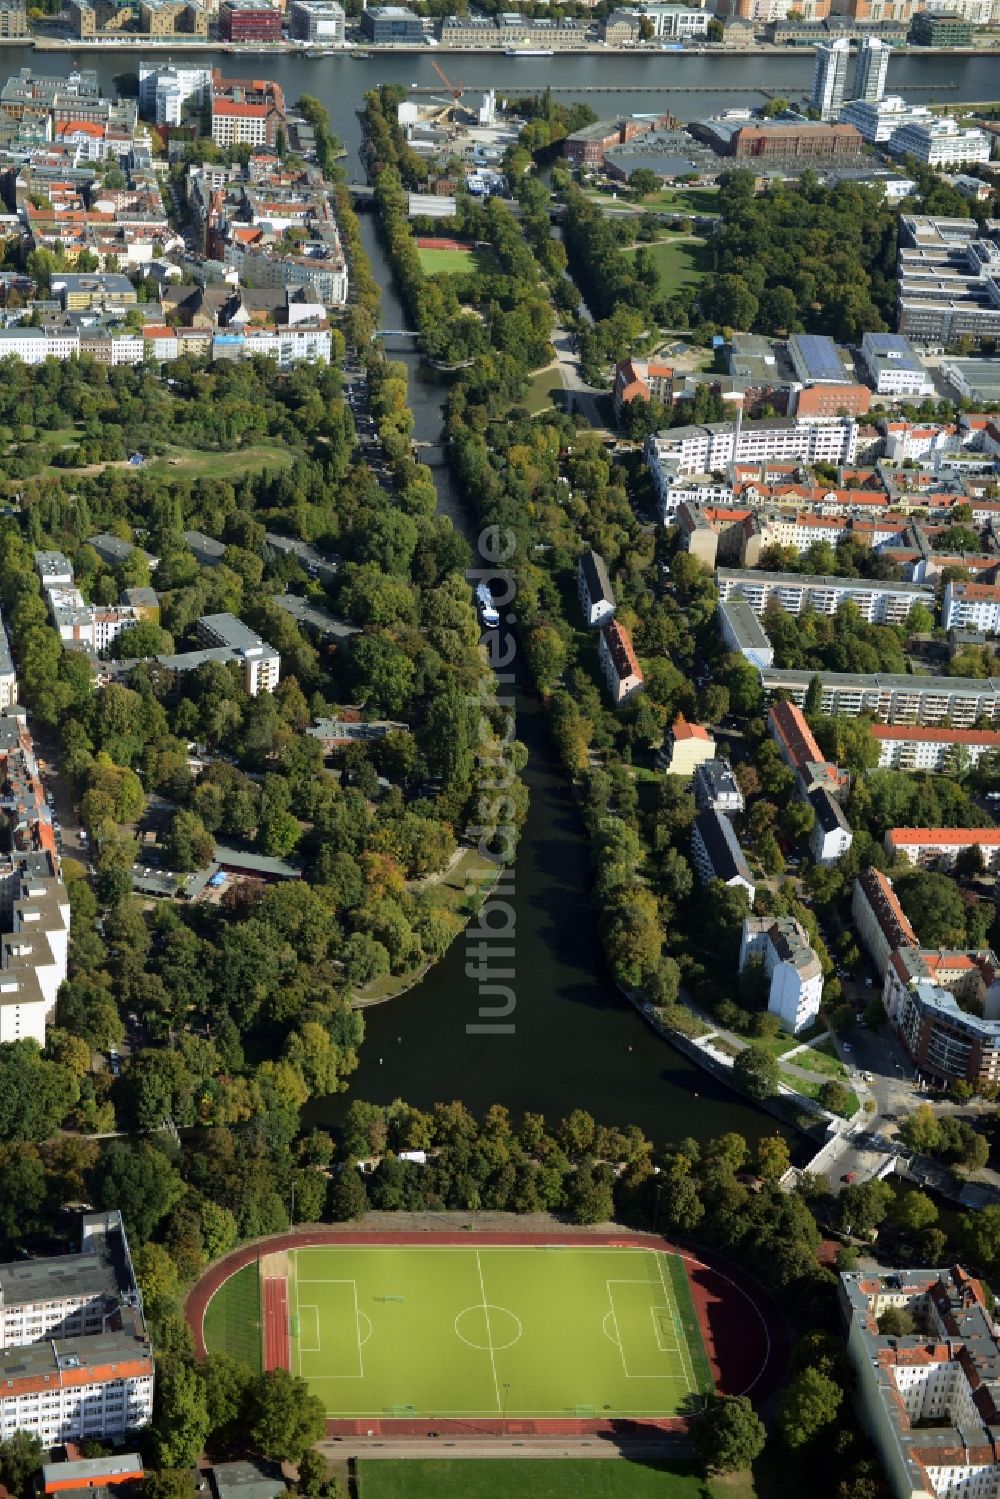 Luftbild Berlin - Stadtteilansicht des Wohngebietes an den Ufern des Landwehrkanals zwischen den Ortsteilen Kreuzberg und Alt-Treptow in Berlin